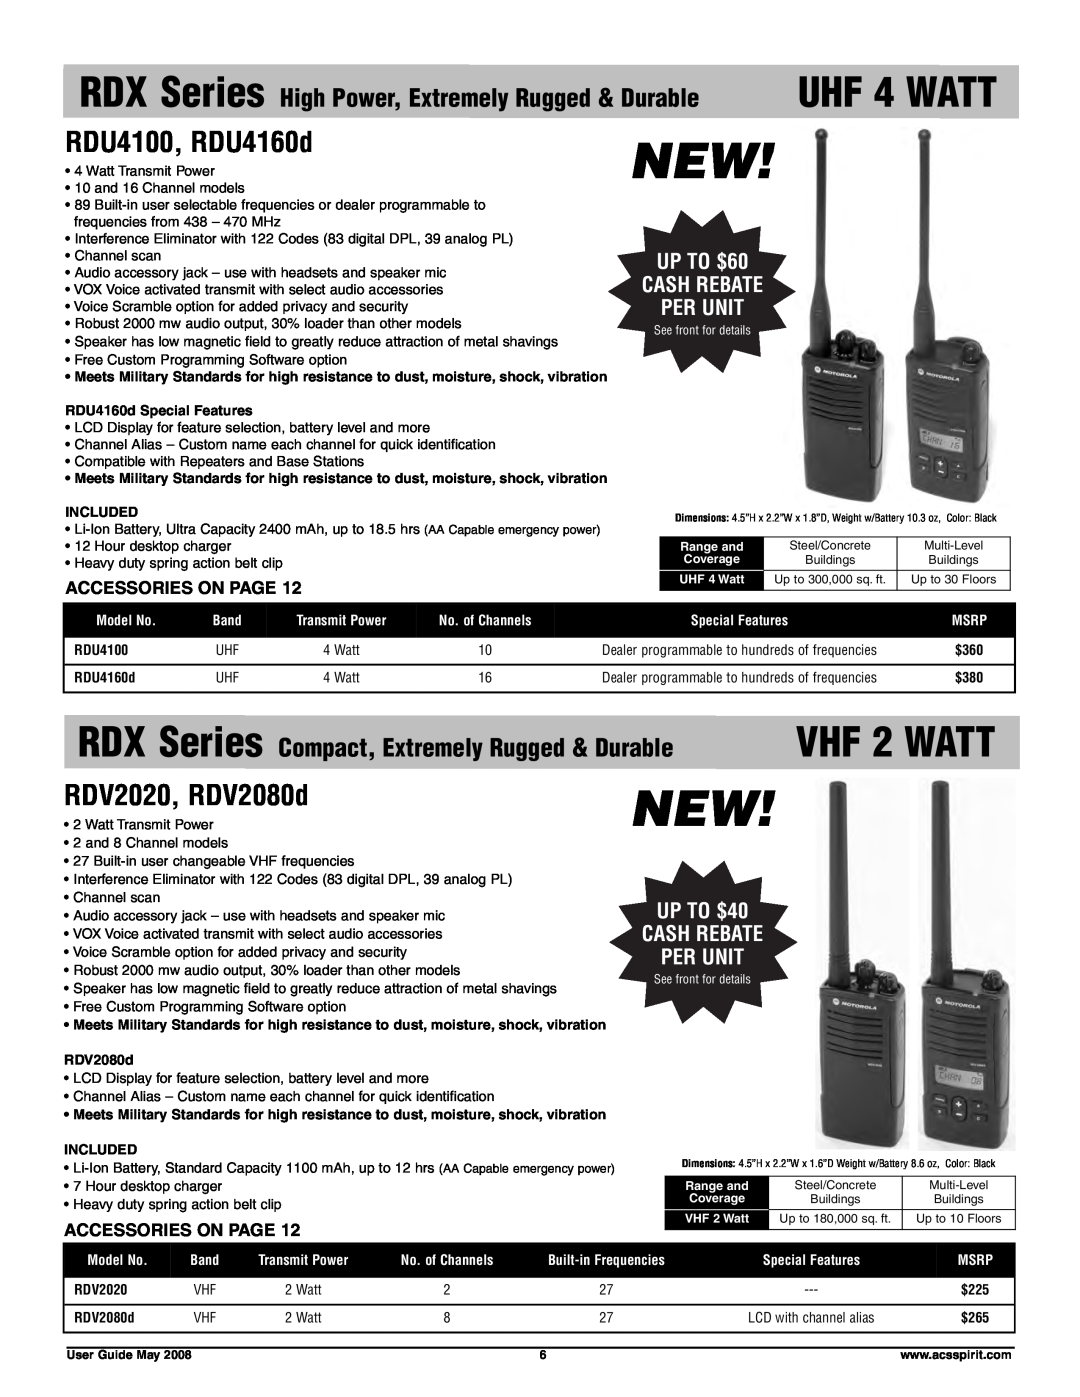 Motorola RDV5100 UHF 4 WATT, VHF 2 WATT, RDU4100, RDU4160d, RDV2020, RDV2080d, UP TO $60 CASH REBATE PER UNIT, Included 